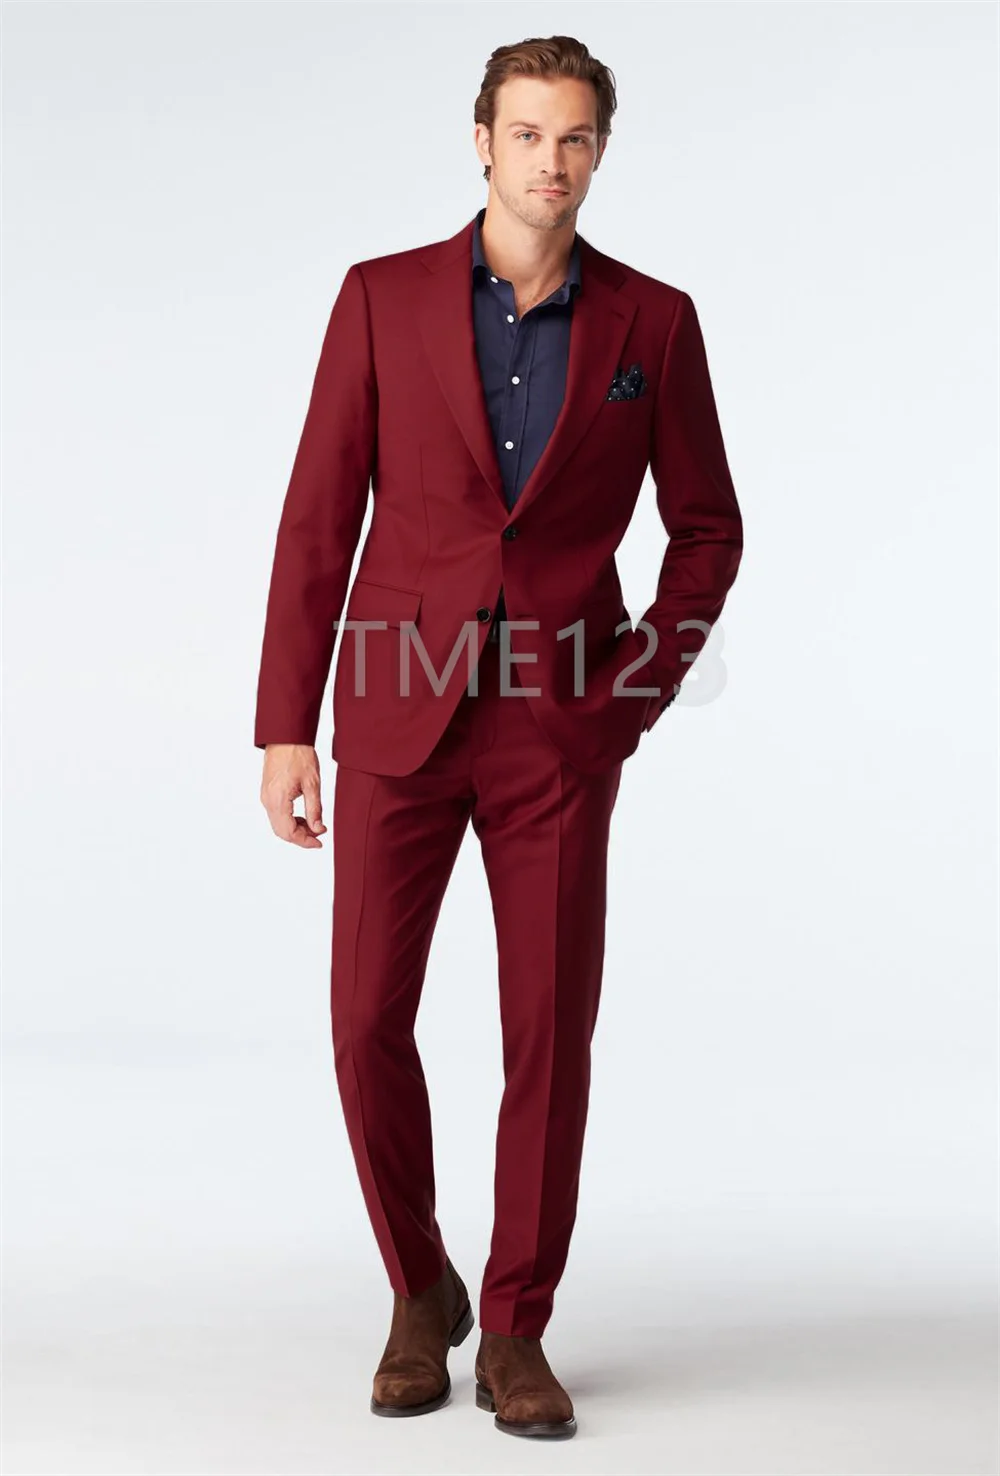 Blazers Pants Vest Sets  2022 New Fashion Groom Wedding Dress Suits  Men's Casual Business 3 Piece Suit Jacket Coat Trousers